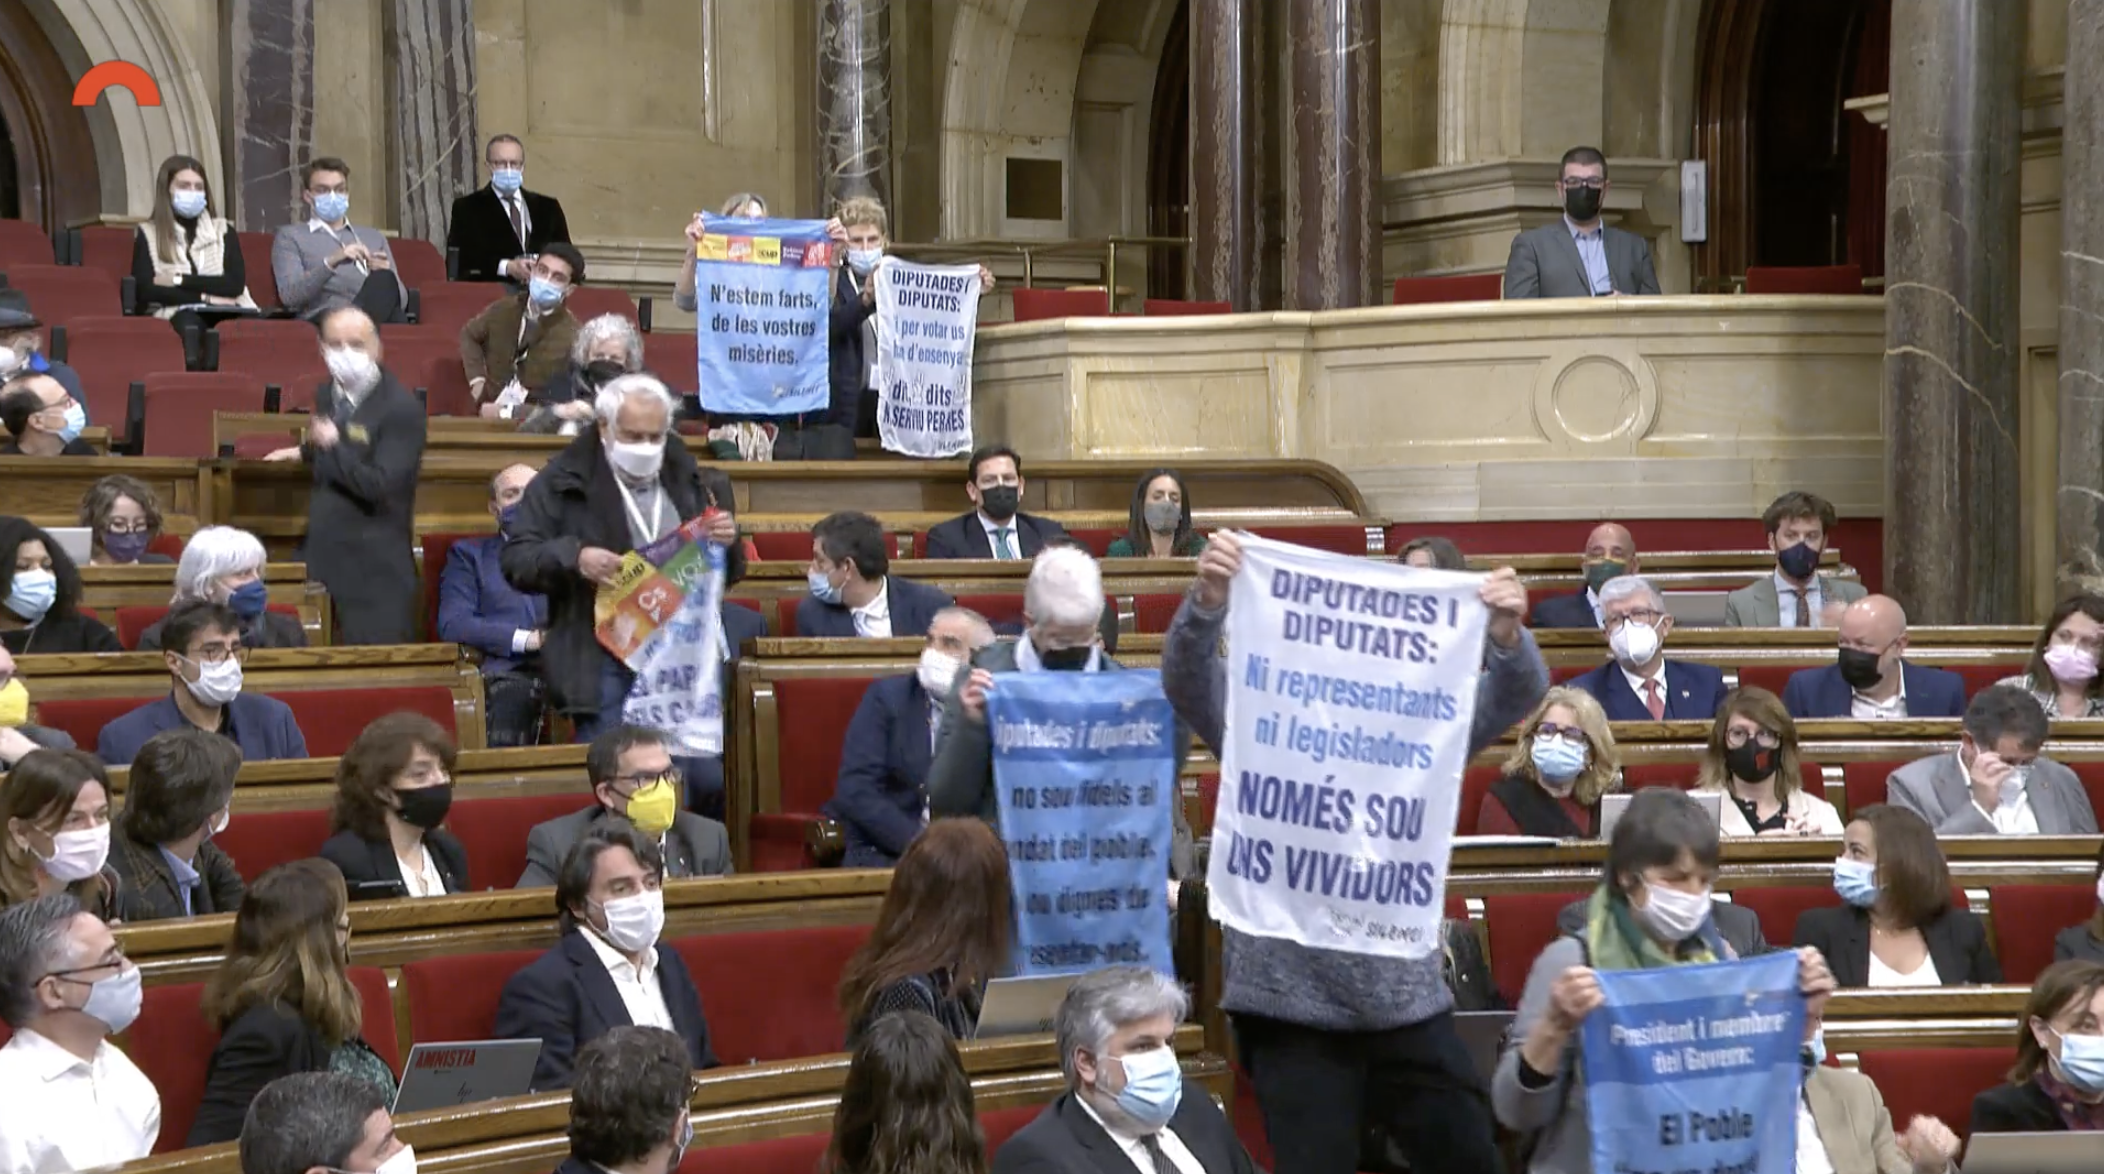 ‘Yayoflautas independentistas’ boicotean el pleno del Parlament: «Sois unos vividores»